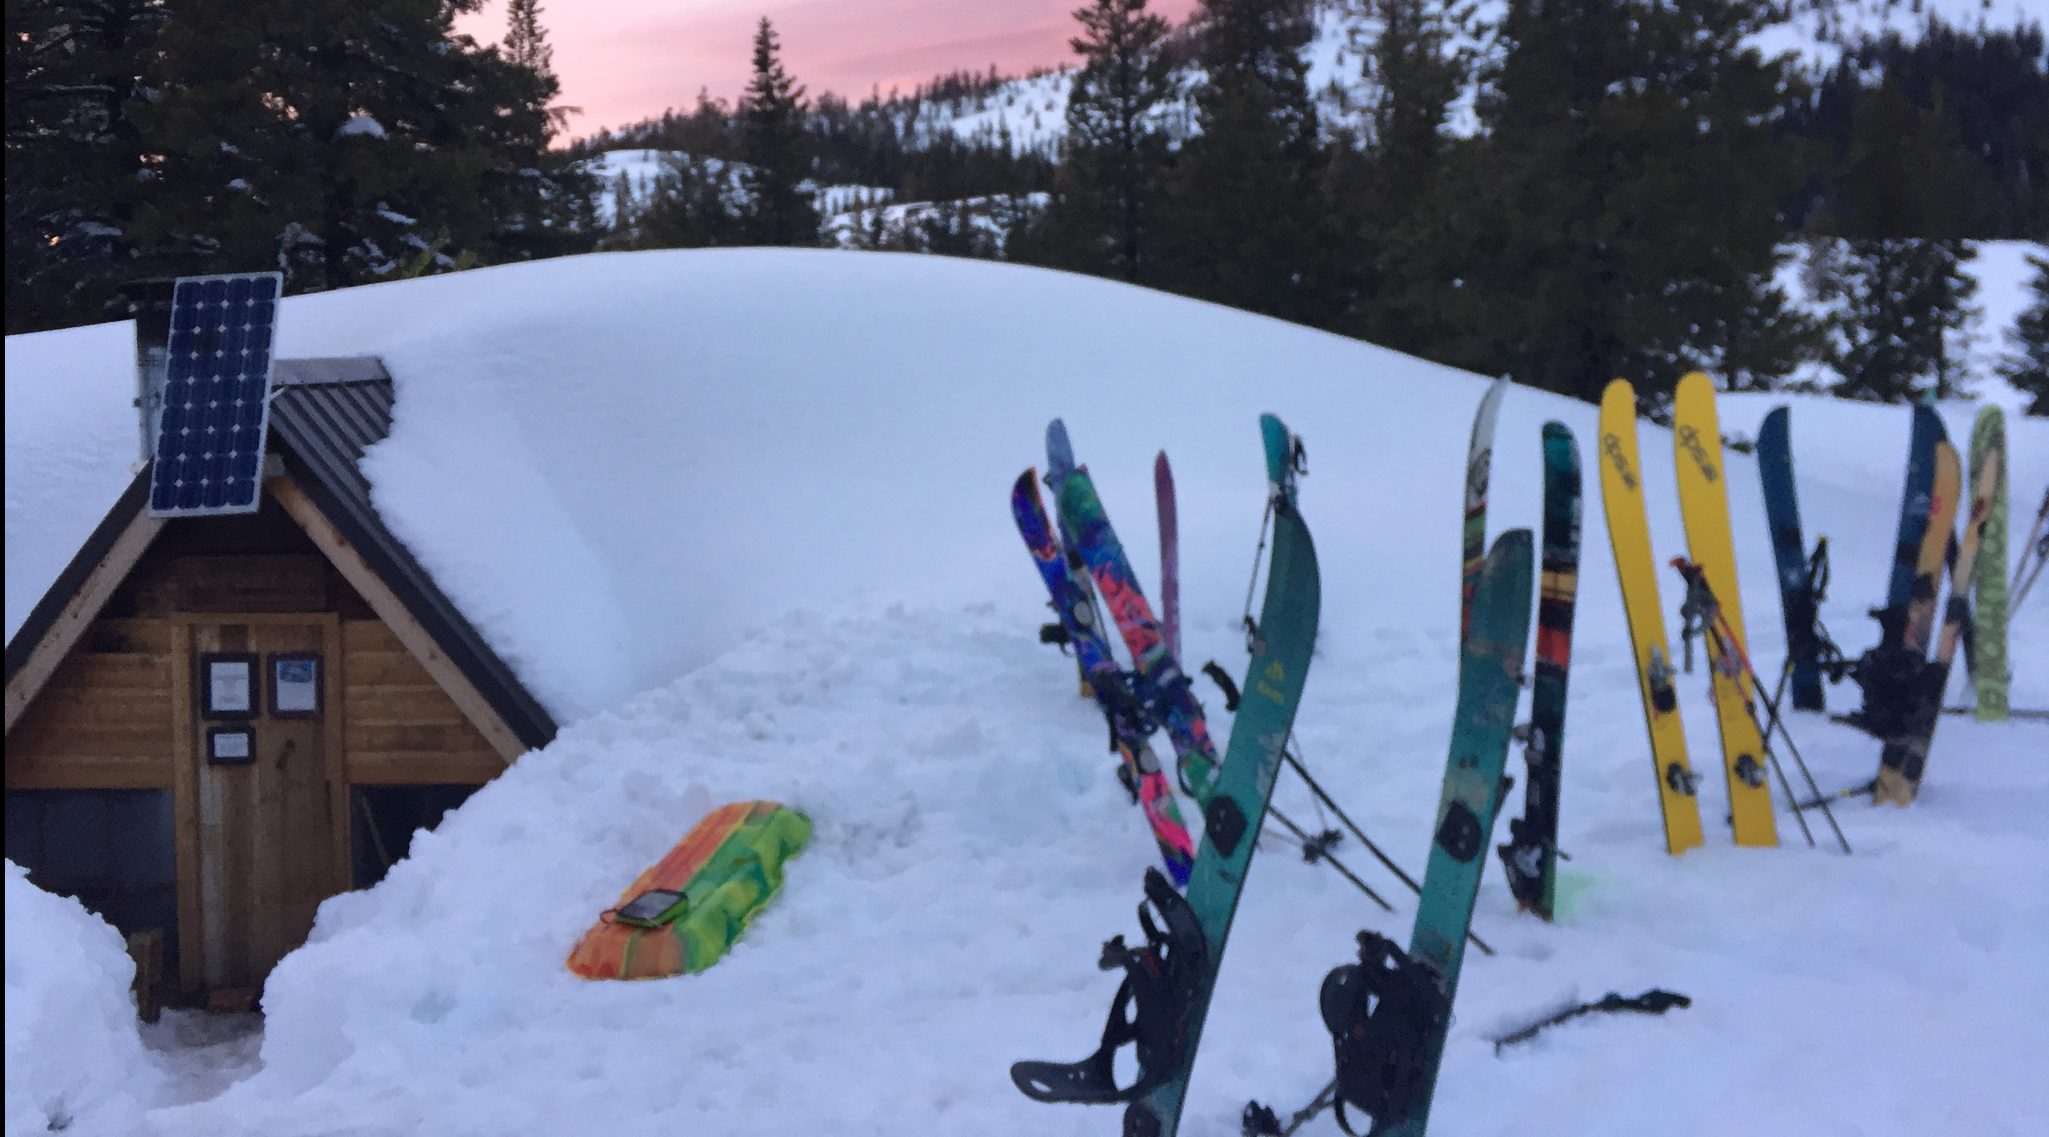 setting up skis at winter basecamp